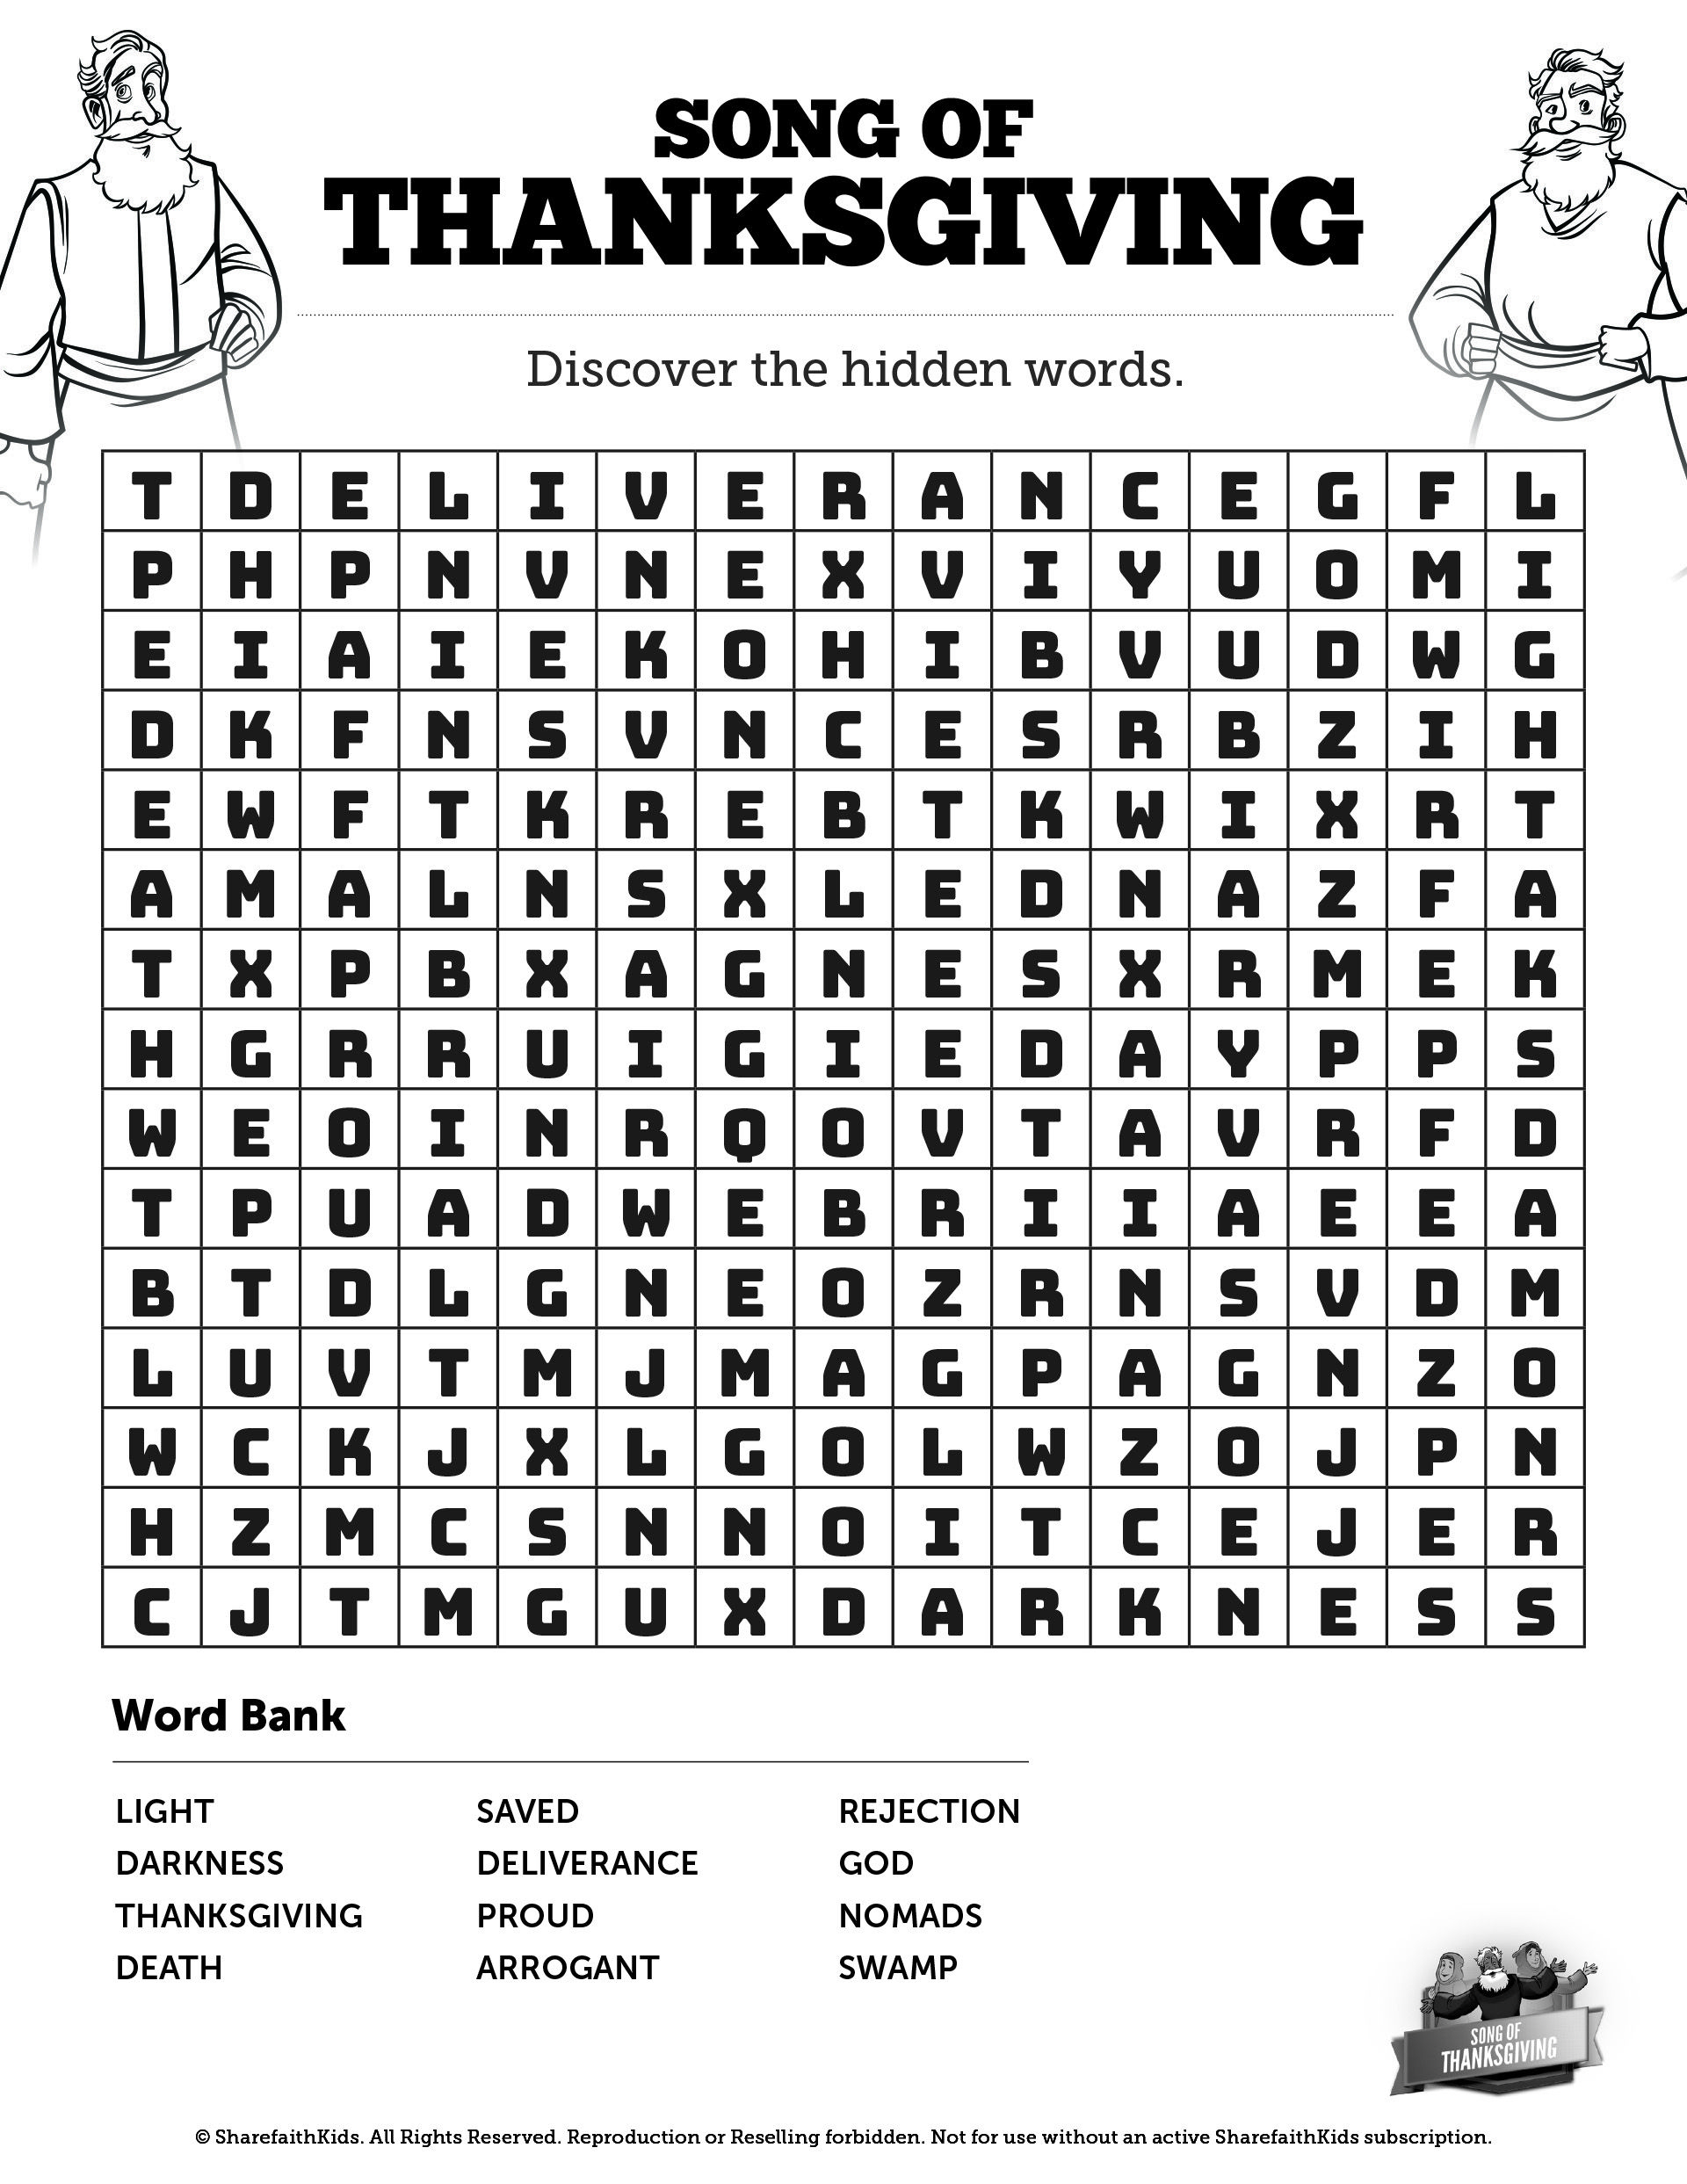 Religious Thanksgiving Word Search Printable | Word Search Printable - Thanksgiving Bible Word Search Printable